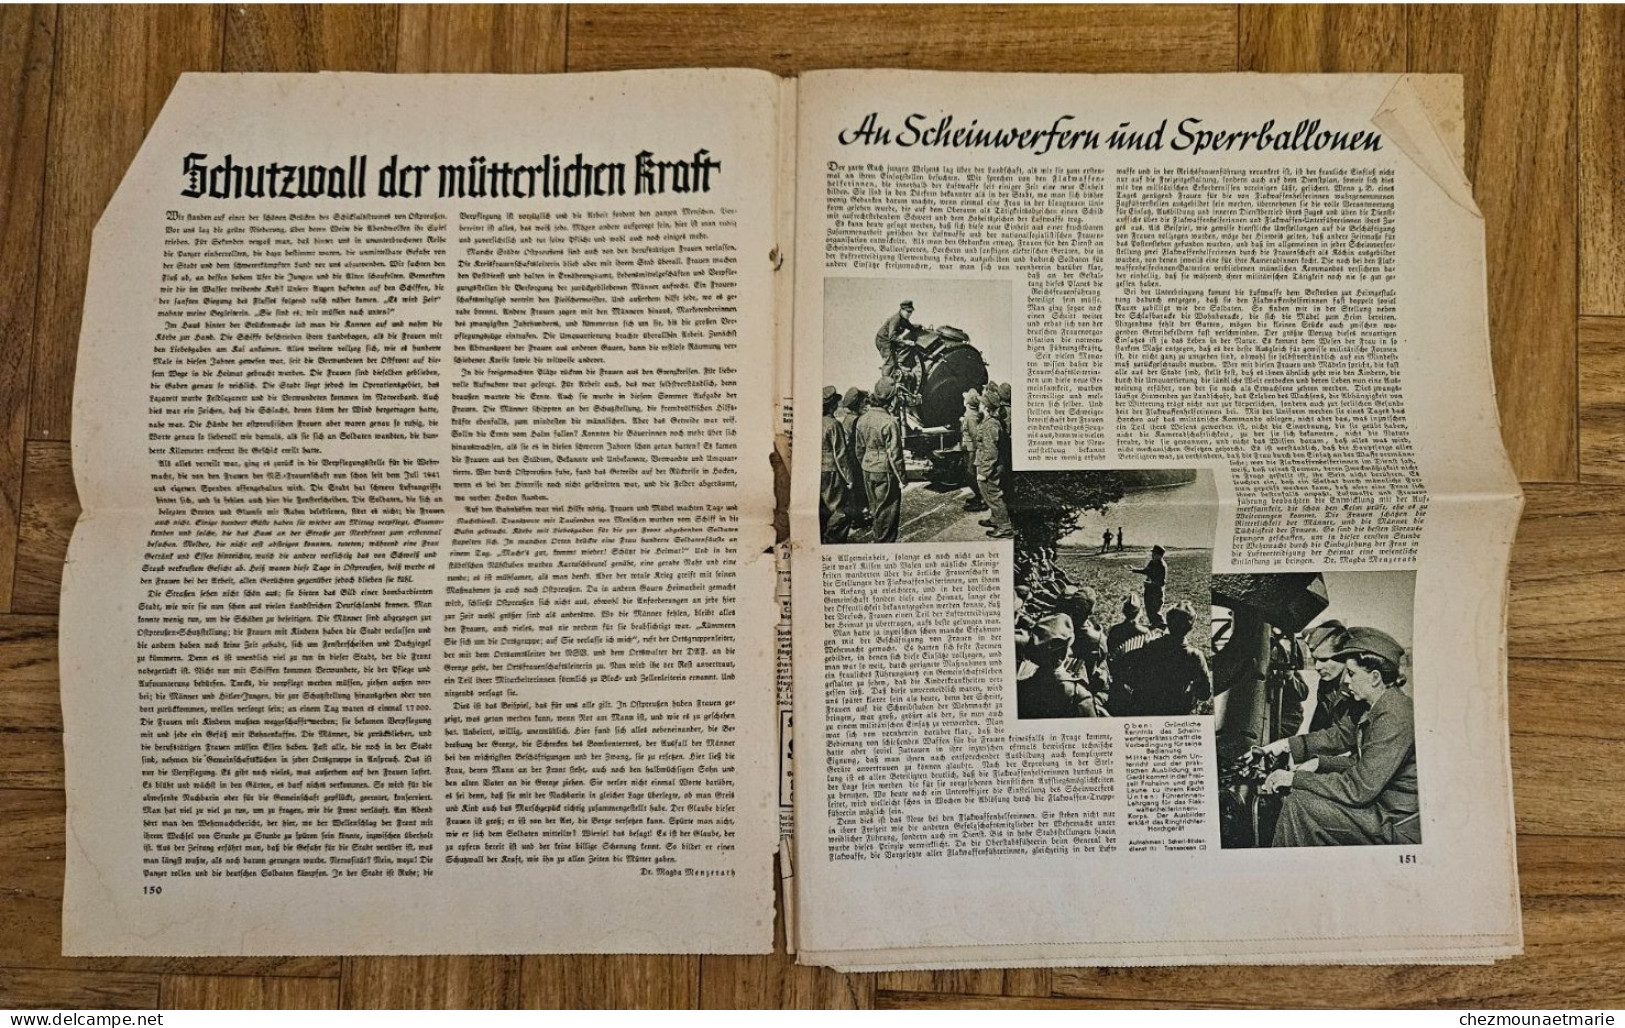 FRAUEN WARTE Die Einzige Parteiamtliche Frauenzeitschrift 1944 Heft 11 JOURNAL - 1950 - Today